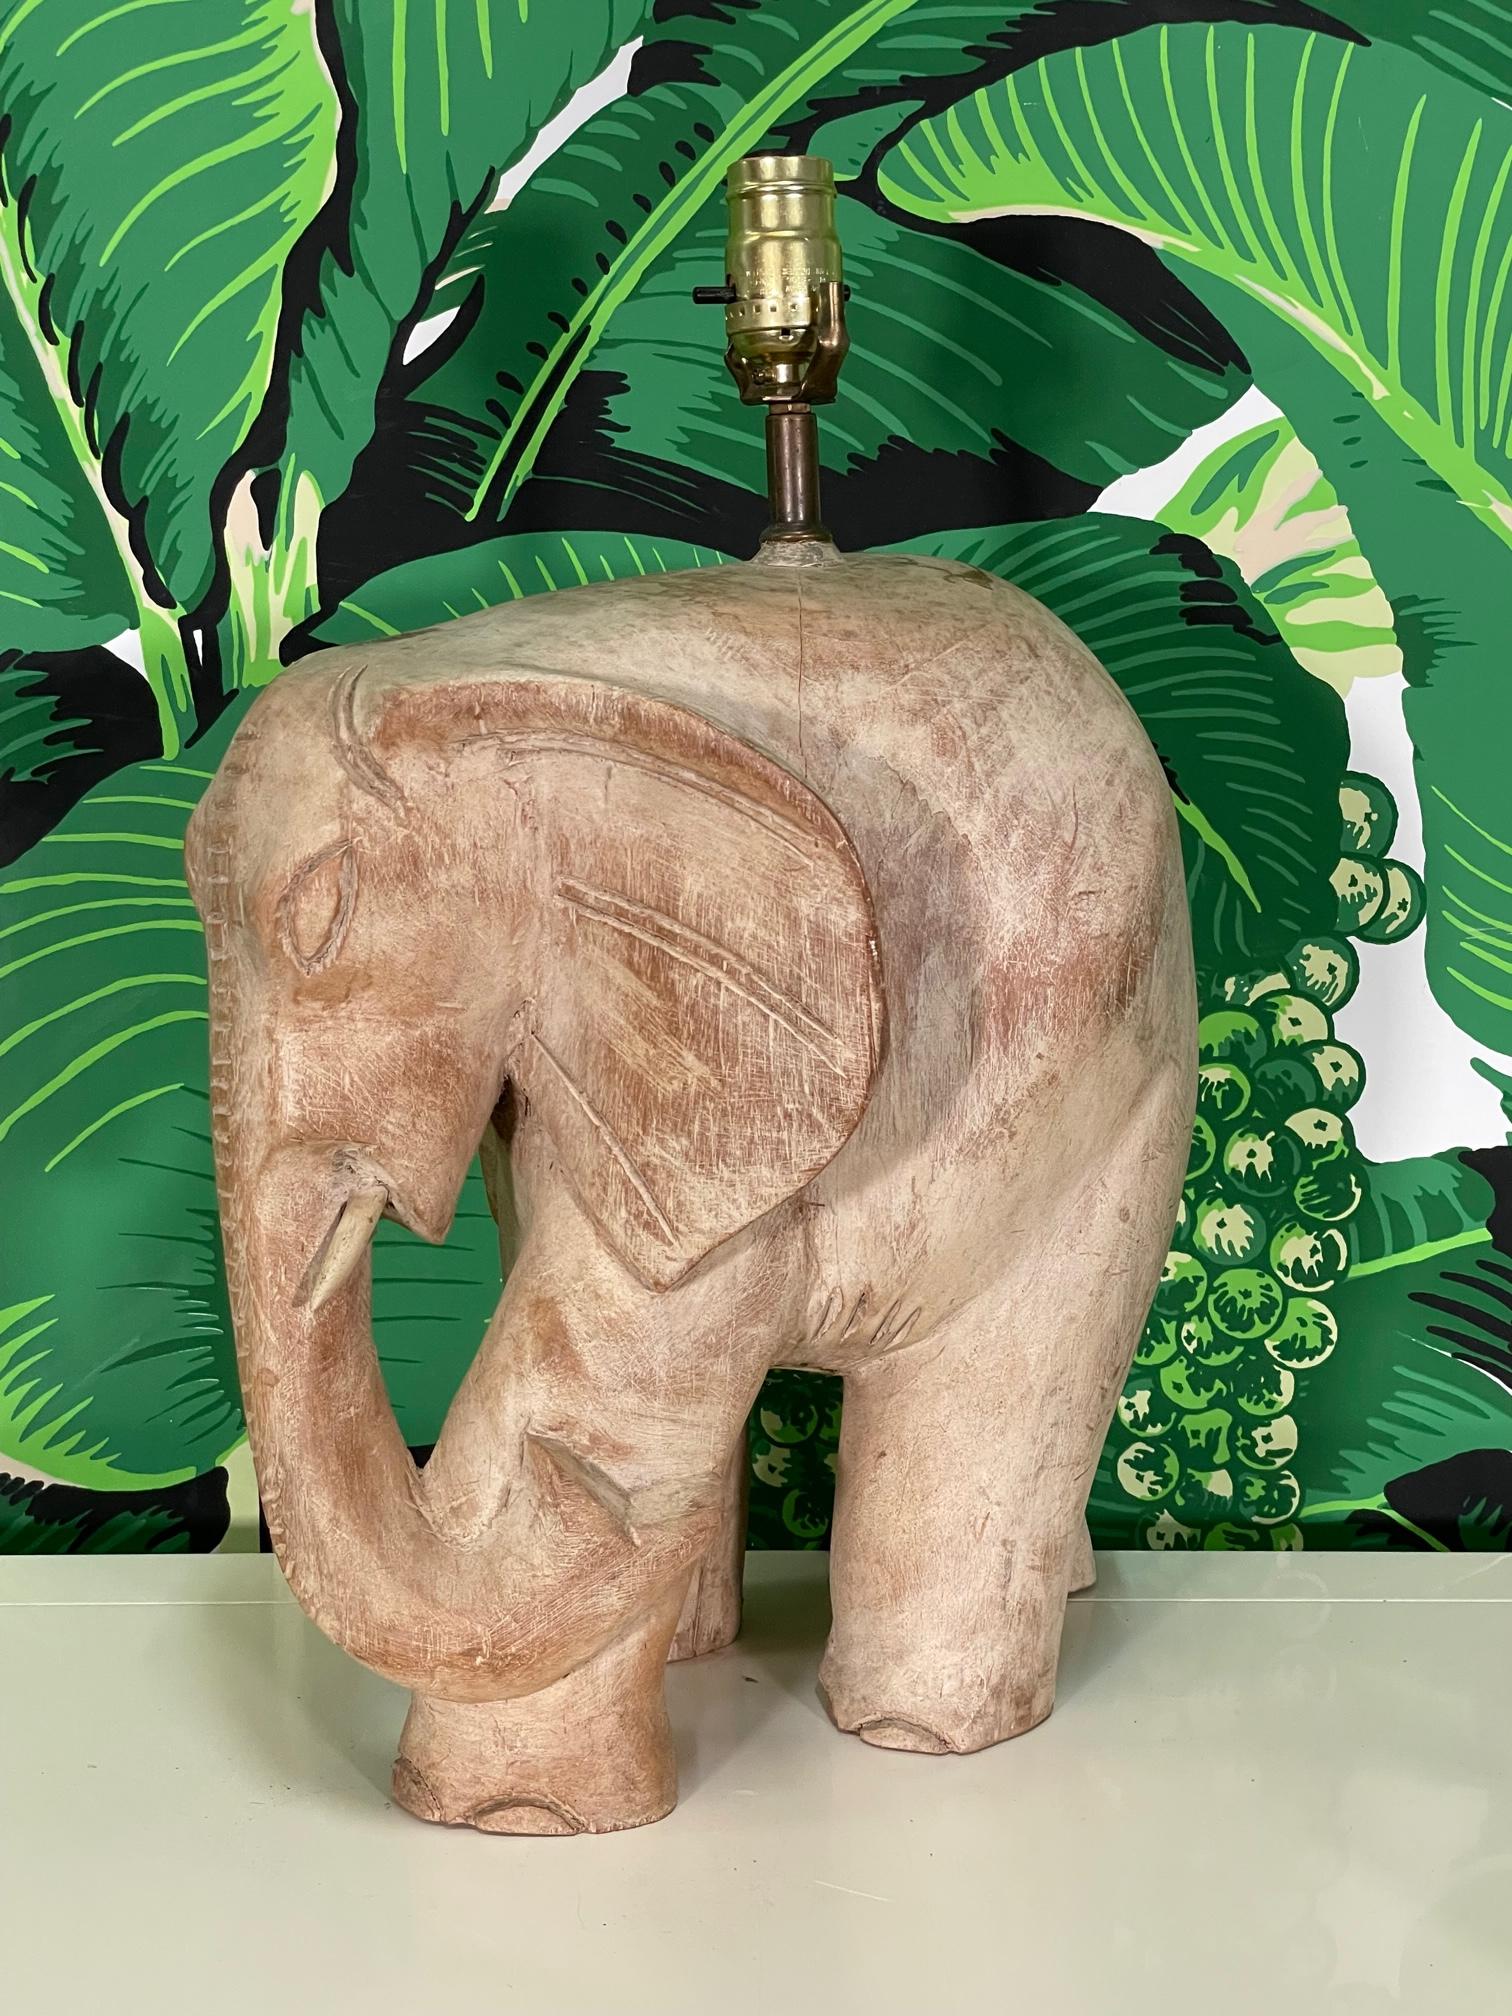 Grande lampe de table en bois sculpté à la main représentant un éléphant d'Afrique. Bon état avec de légères imperfections dues à l'âge, quelques fissures mais pas de problème structurel. 
Pour un devis d'expédition vers votre code postal exact,